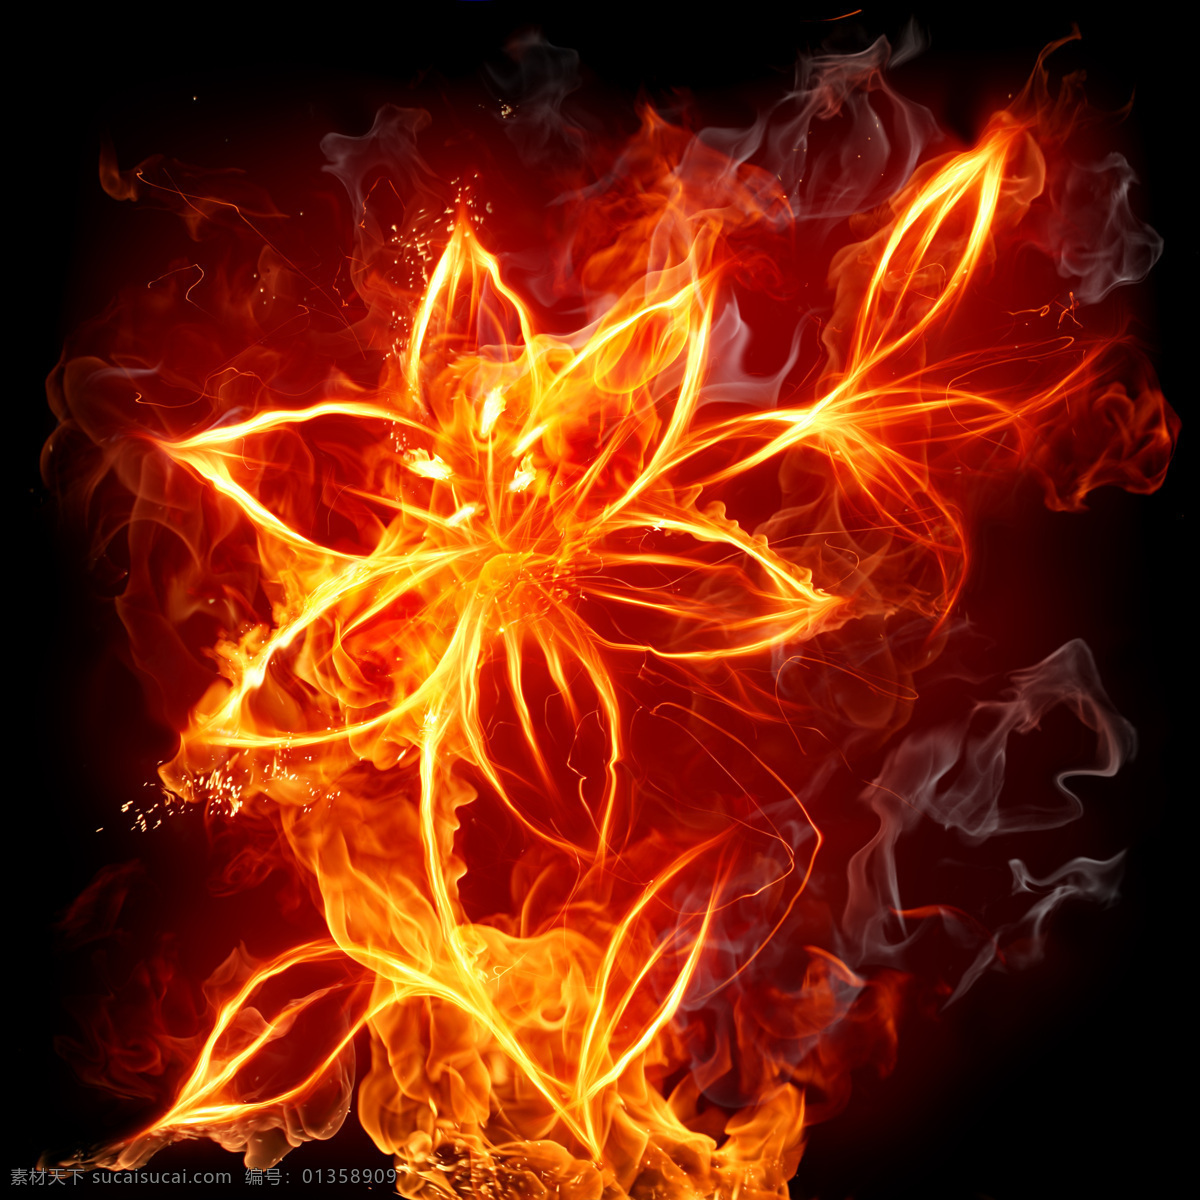 燃烧的花朵 燃烧 火焰 花朵 金光 招贴设计 燃烧系列 设计图库